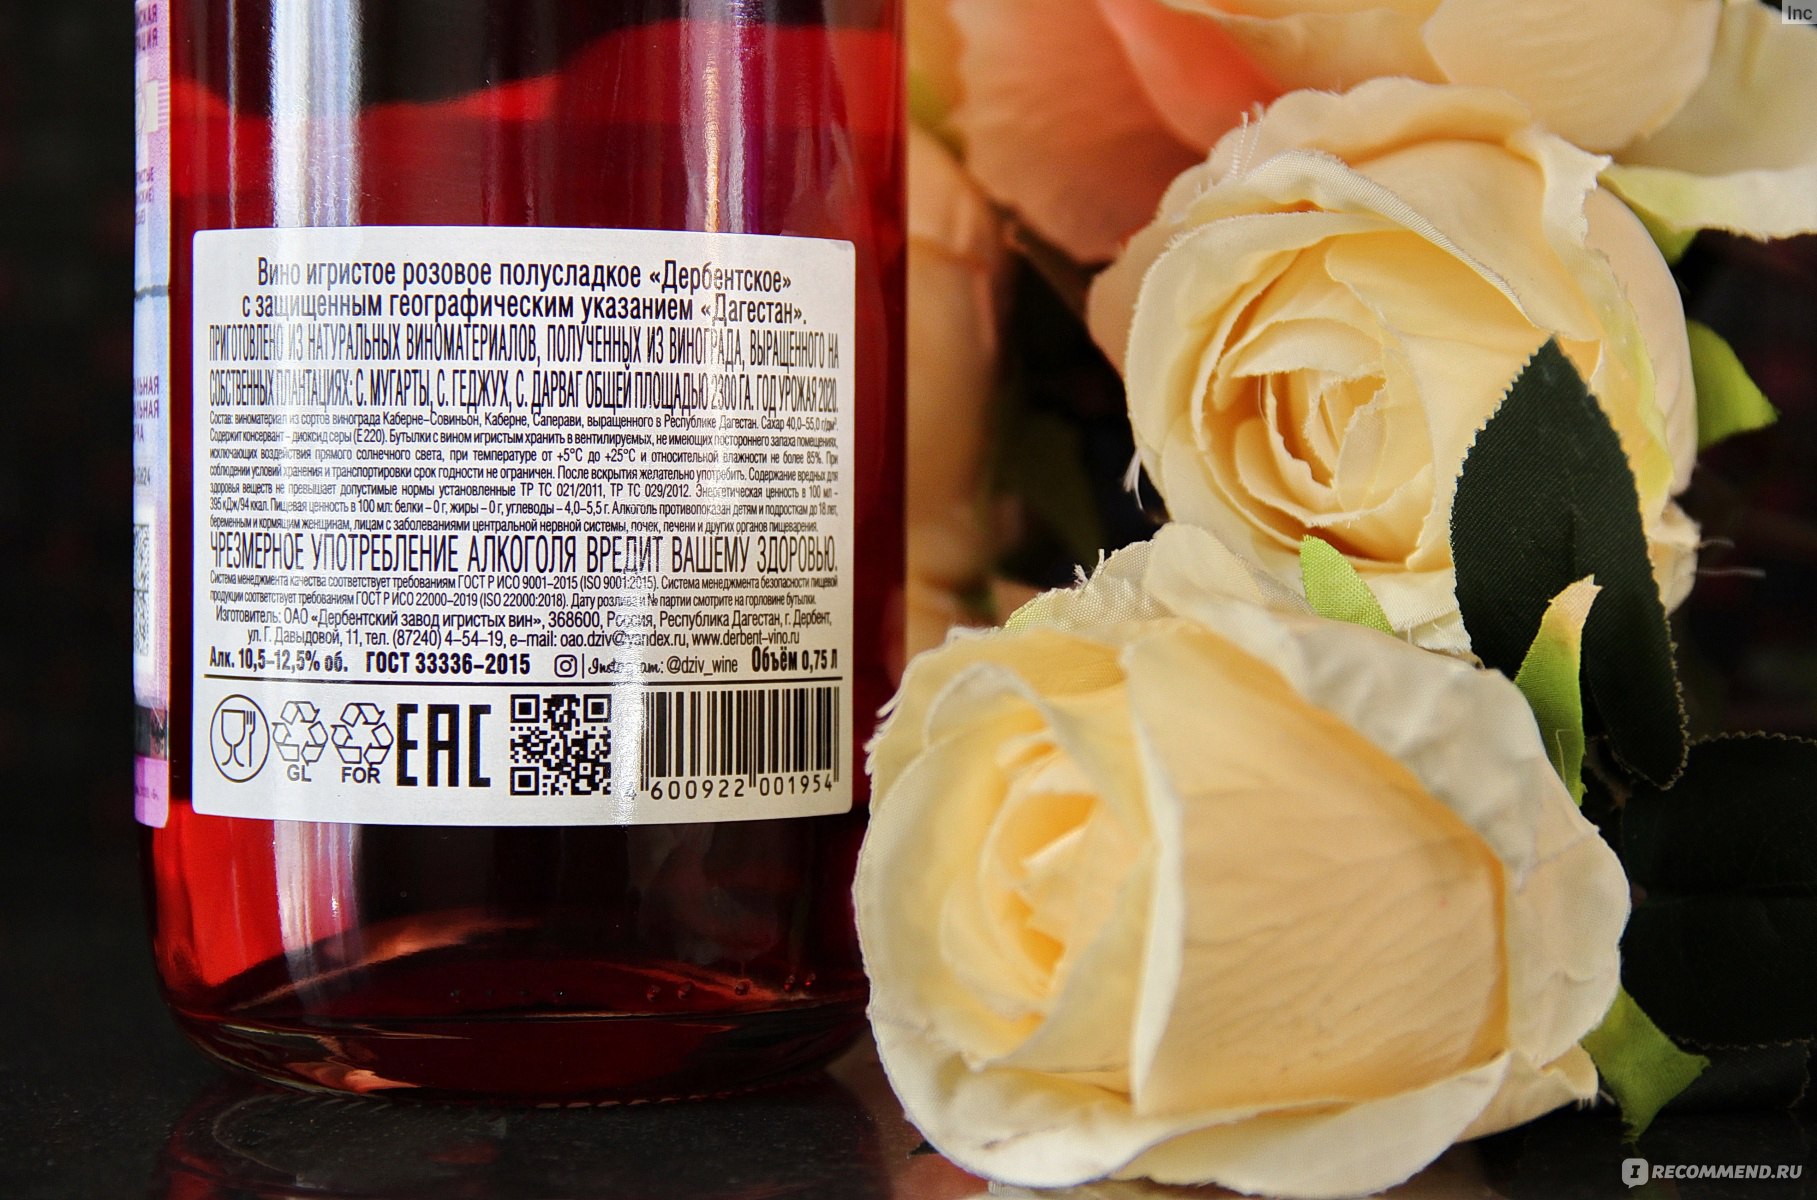 Розовое шампанское дербентское. Шампанское ДЗИВ Дербентское. Розовое игристое вино полусладкое. Вино Дербентское розовое. Игристое вино полусладкое розовое «полусладкое розовое».